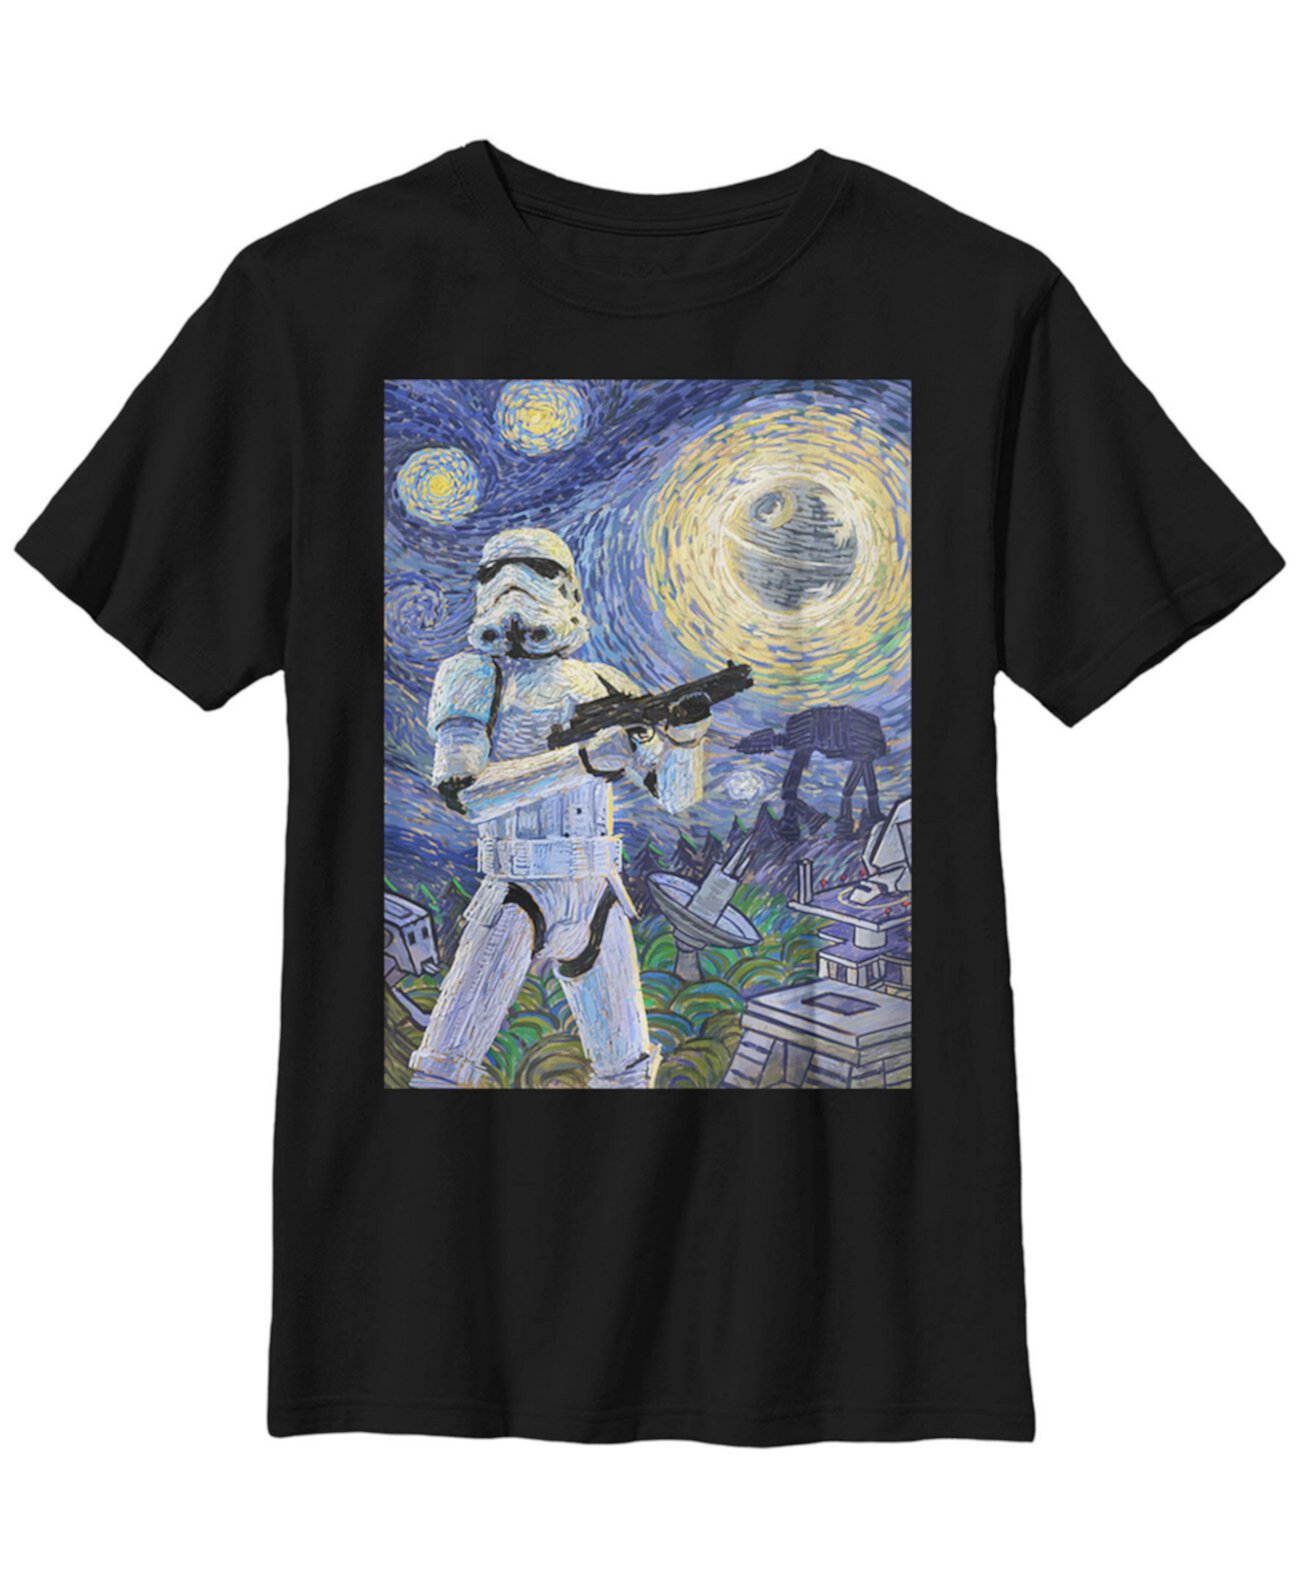 Штурмовик "Звездных войн", "Большой мальчик", Звездная ночь, футболка с коротким рукавом FIFTH SUN